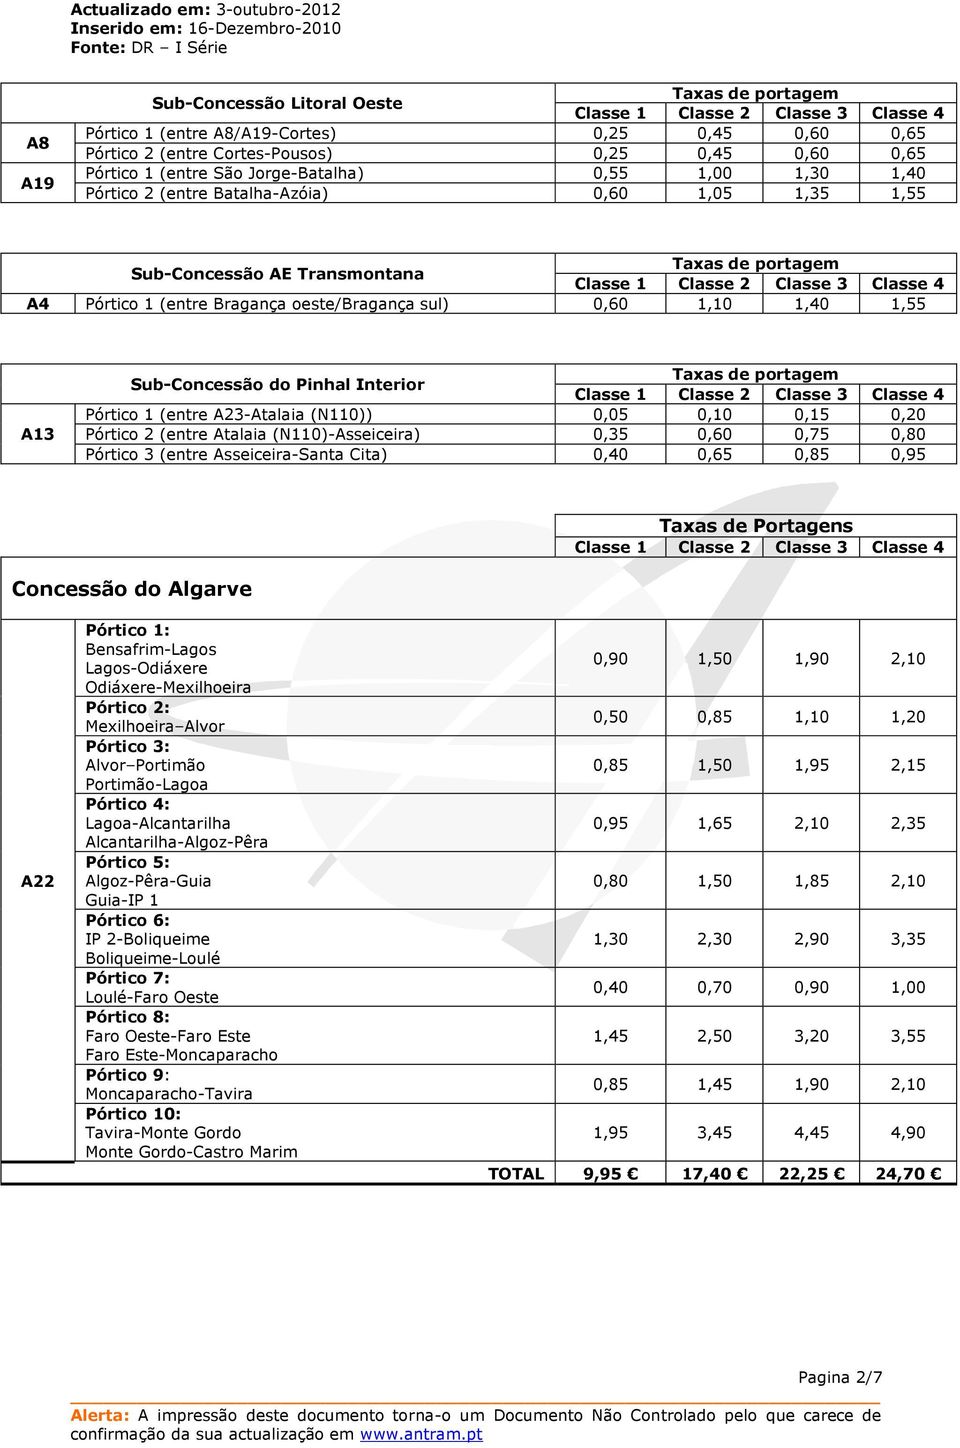 Sub-Concessão do Pinhal Interior Taxas de portagem Pórtico 1 (entre A23-Atalaia (N110)) 0,05 0,10 0,15 0,20 Pórtico 2 (entre Atalaia (N110)-Asseiceira) 0,35 0,60 0,75 0,80 Pórtico 3 (entre